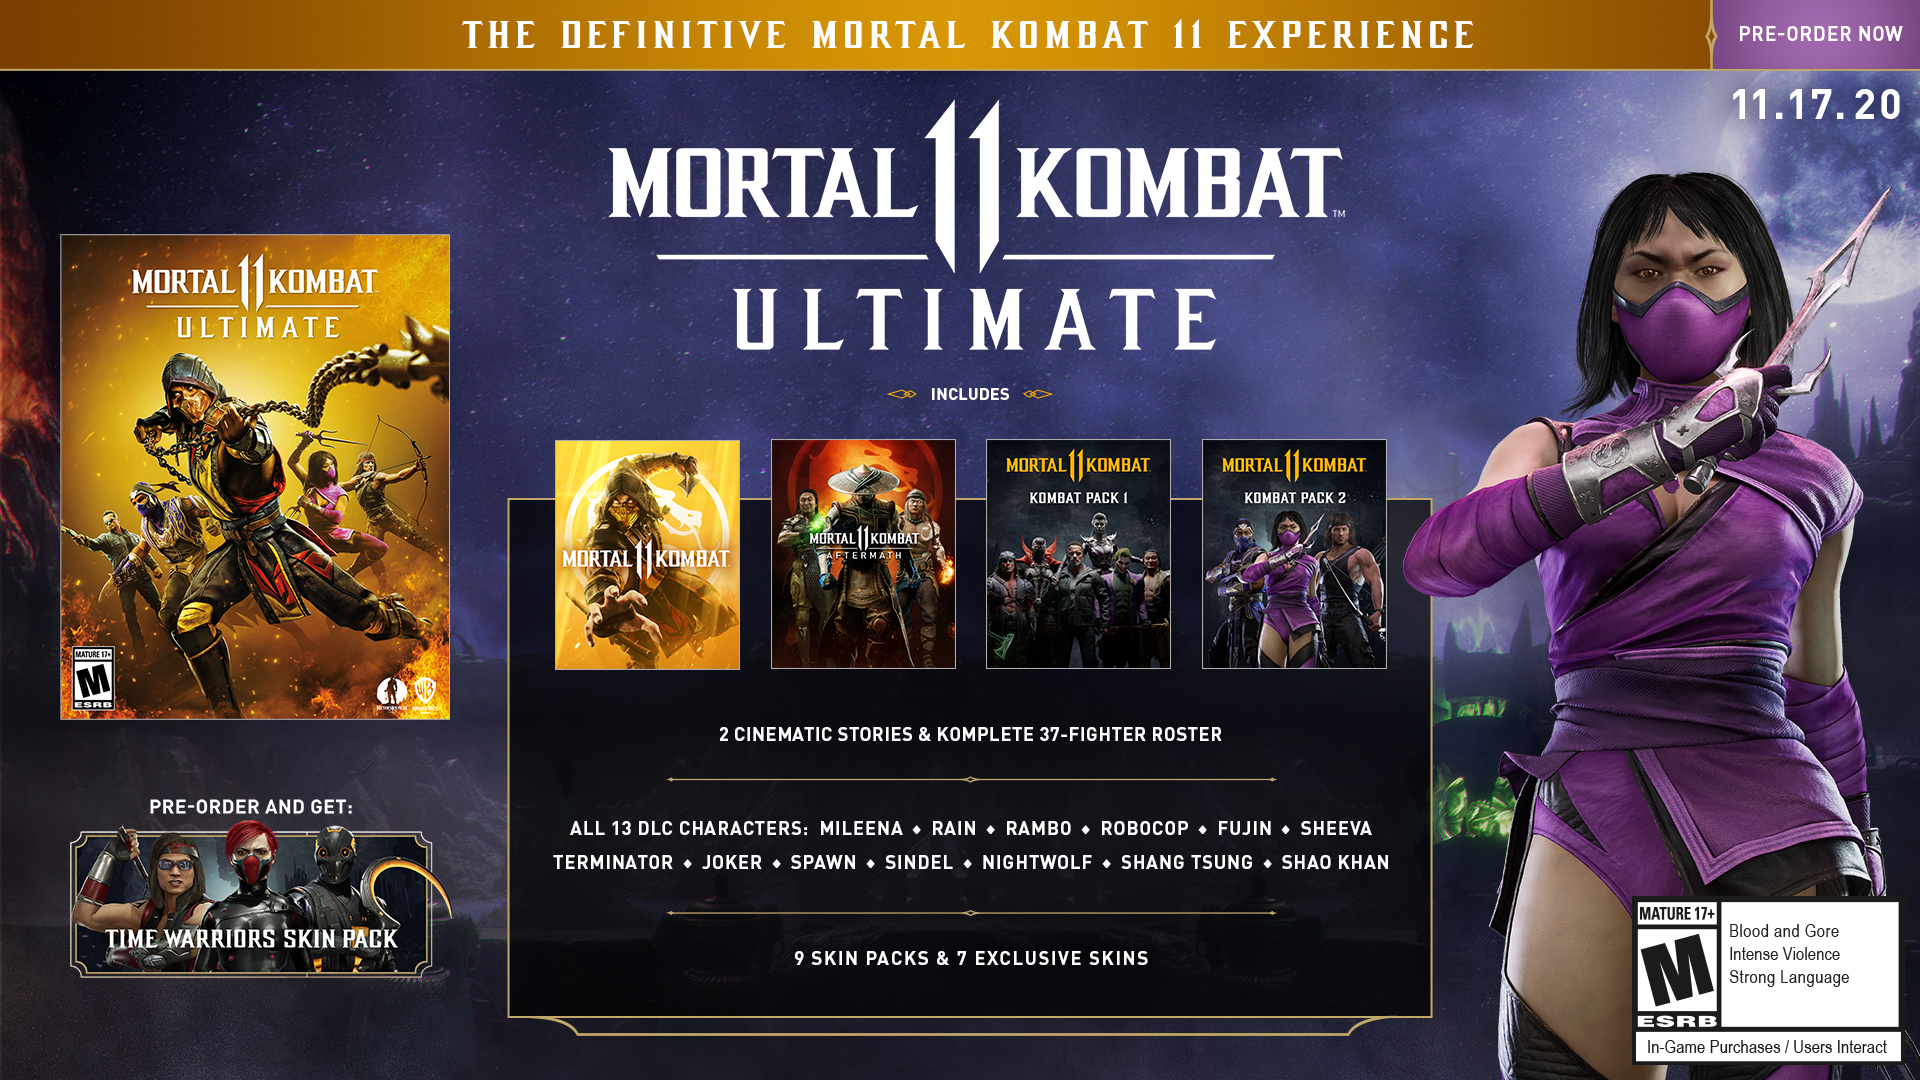 Mortal Kombat 11 Ultimate - Kombat Pack 2 Official Reveal Trailer